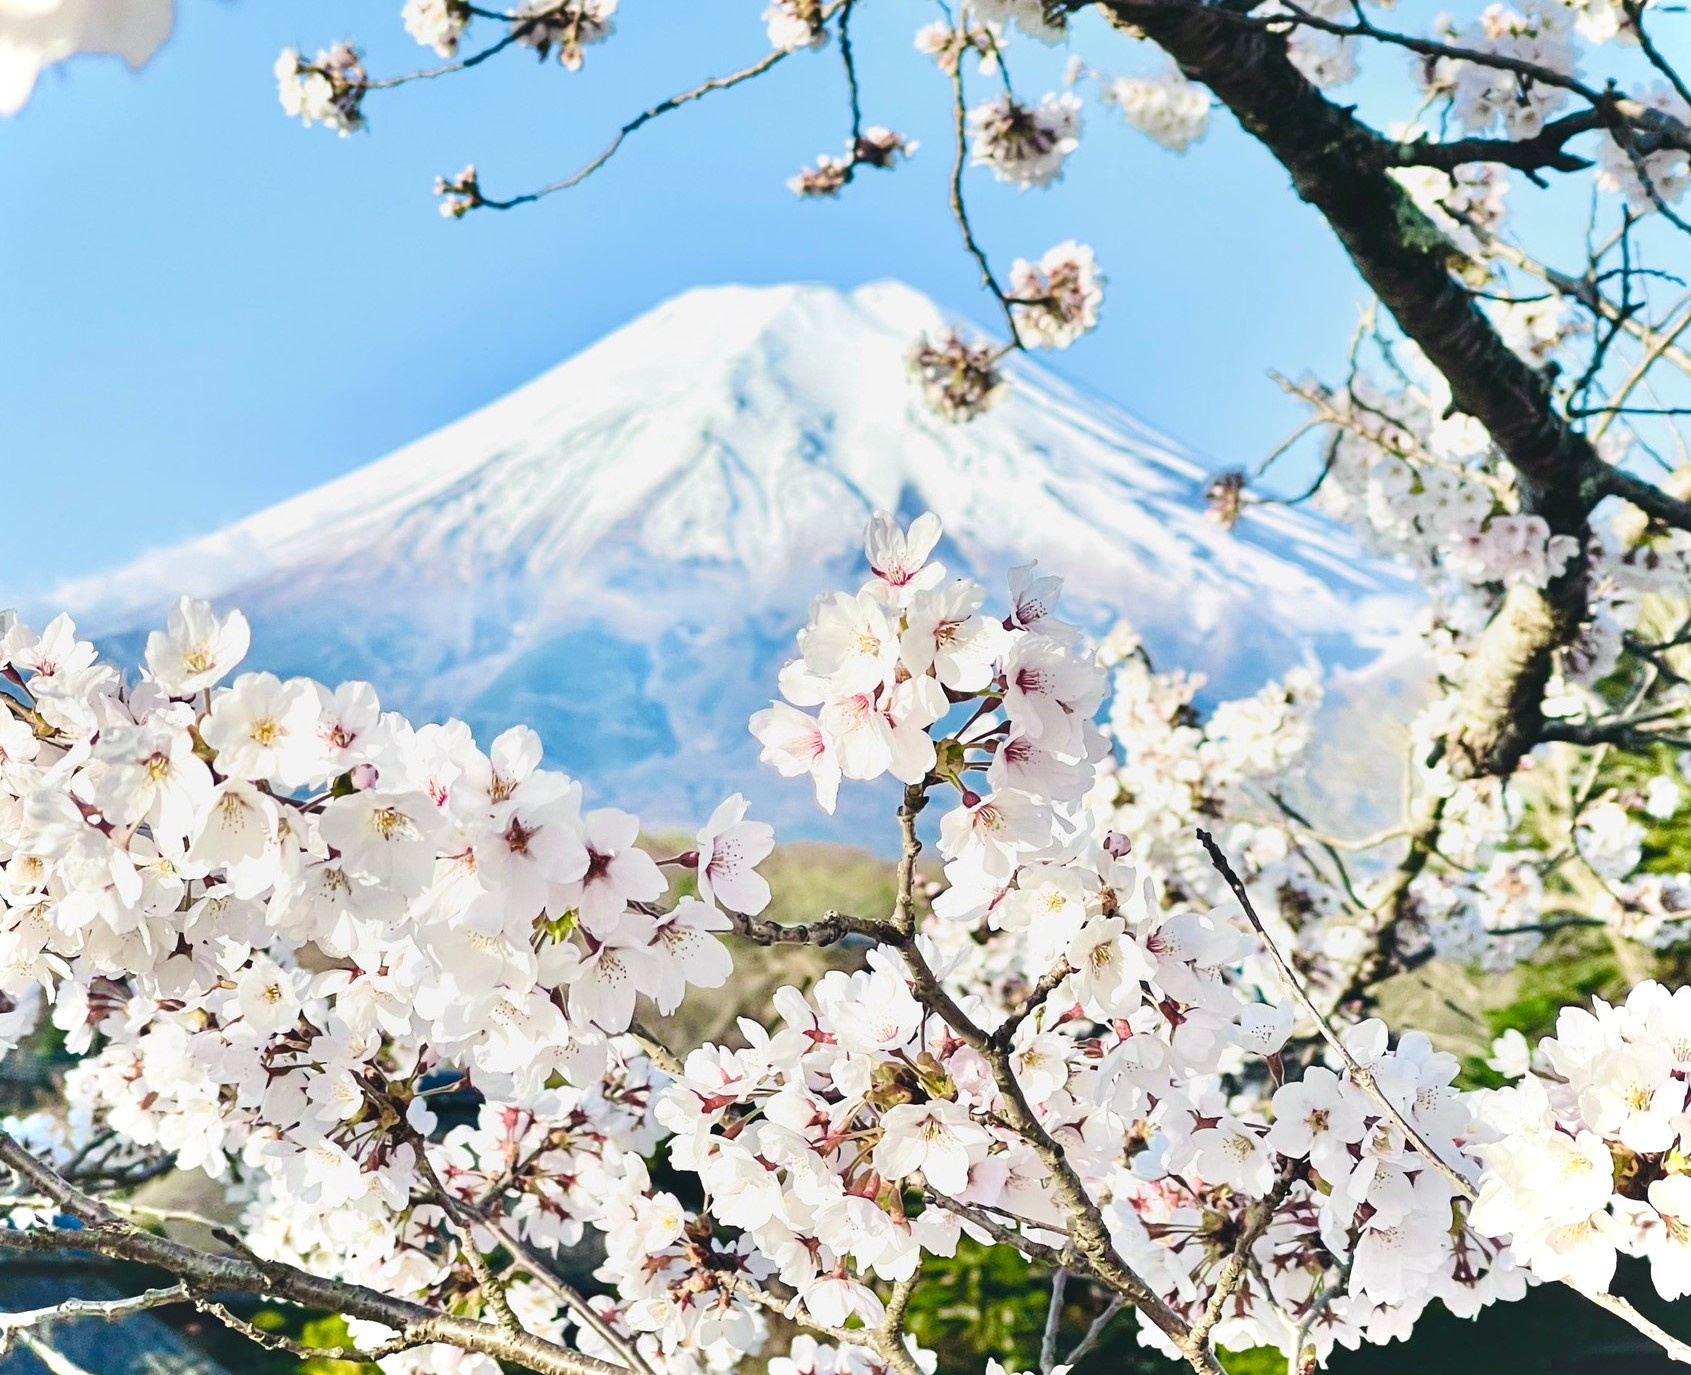 Hoa anh đào Nhật Bản là một trong những loài hoa đẹp nhất thế giới. Với tông màu hồng nhạt, hoa anh đào trở thành biểu tượng của nền văn hóa Nhật Bản. Hãy cảm nhận vẻ đẹp và tinh tế của hoa anh đào, đưa bạn đến với một thế giới đầy phong cách và nghệ thuật.